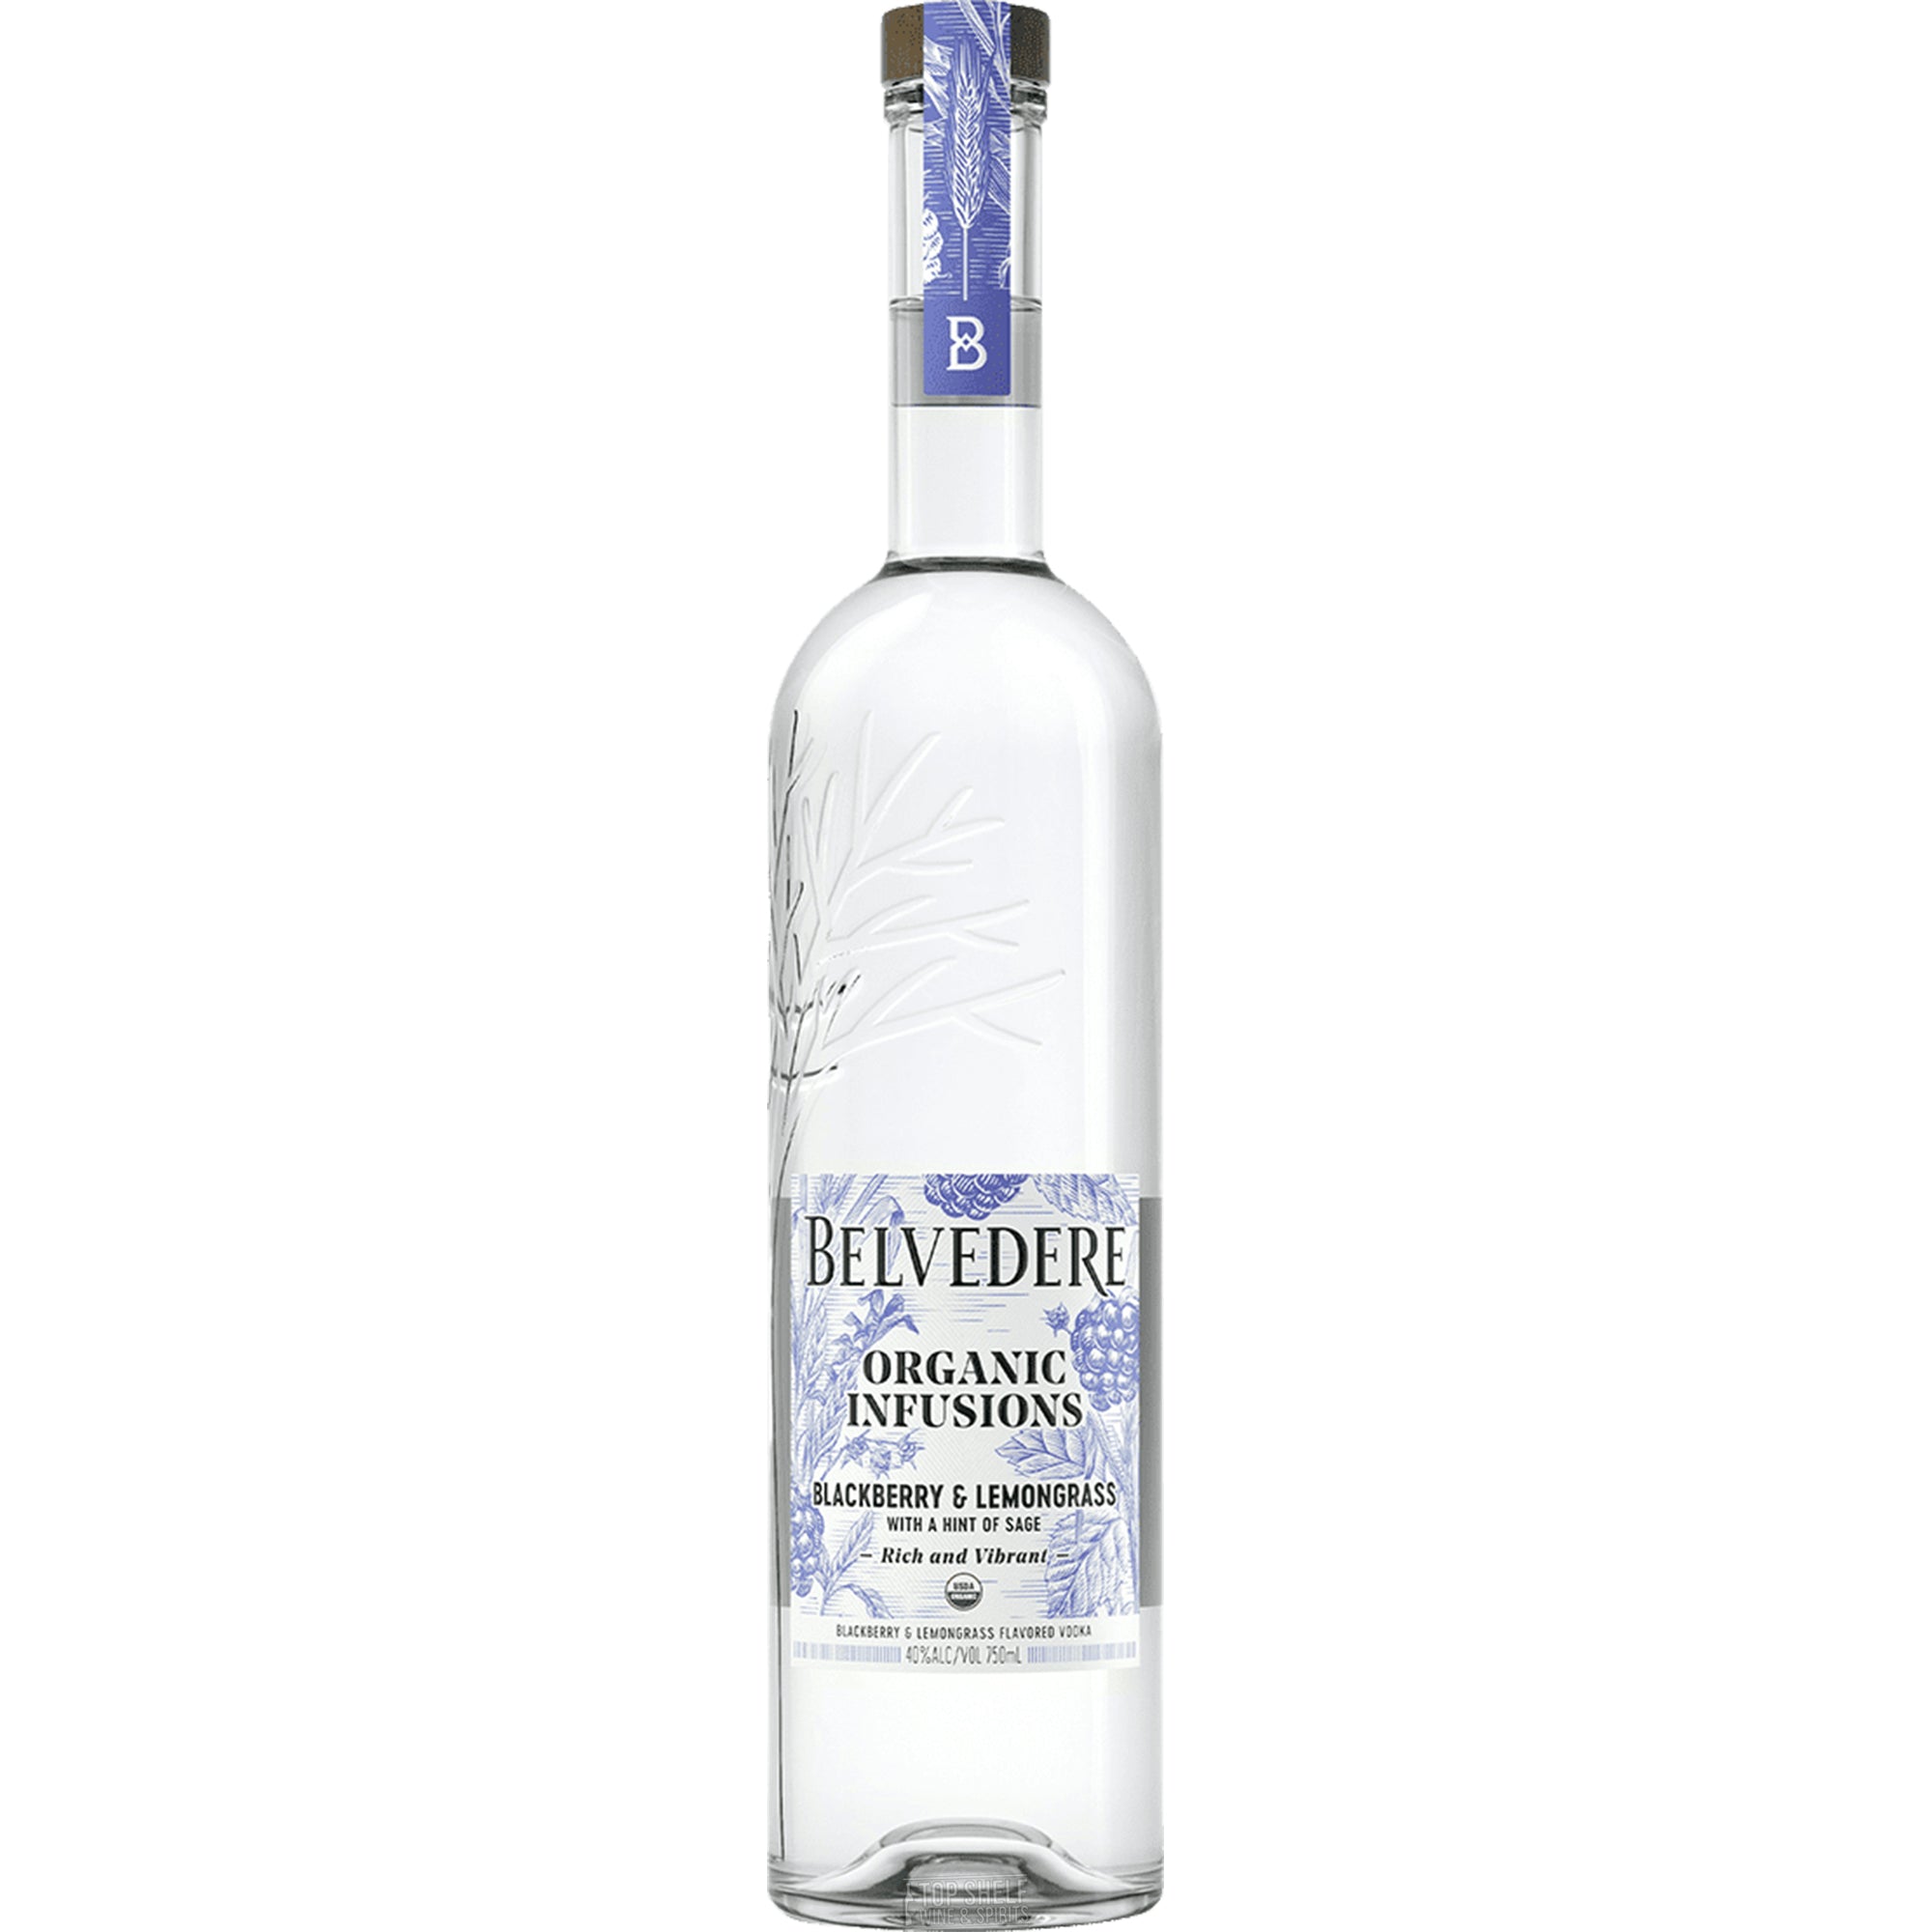 Order Belvedere Organic Infusions Blackberry & Lemongrass Vodka